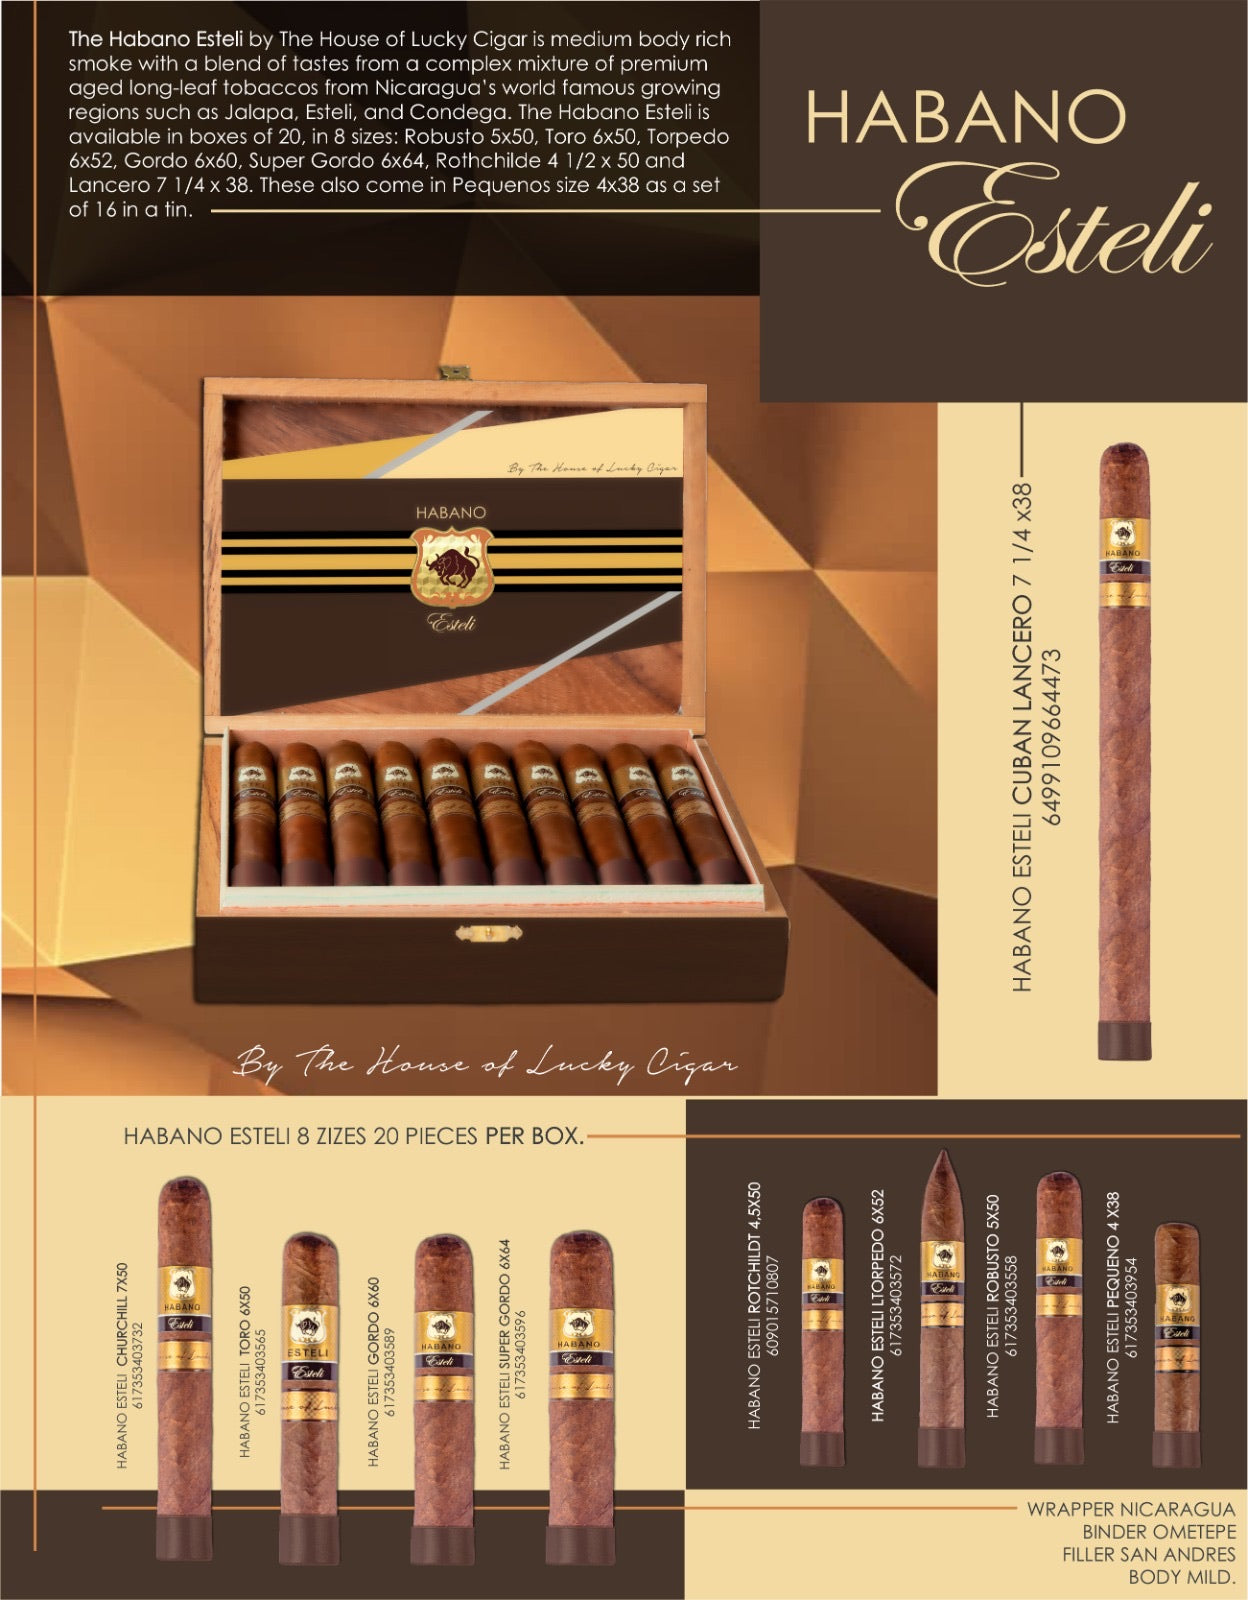 Habano Cigars: Habano Esteli Rothchilde 4.5x50 Box of 20